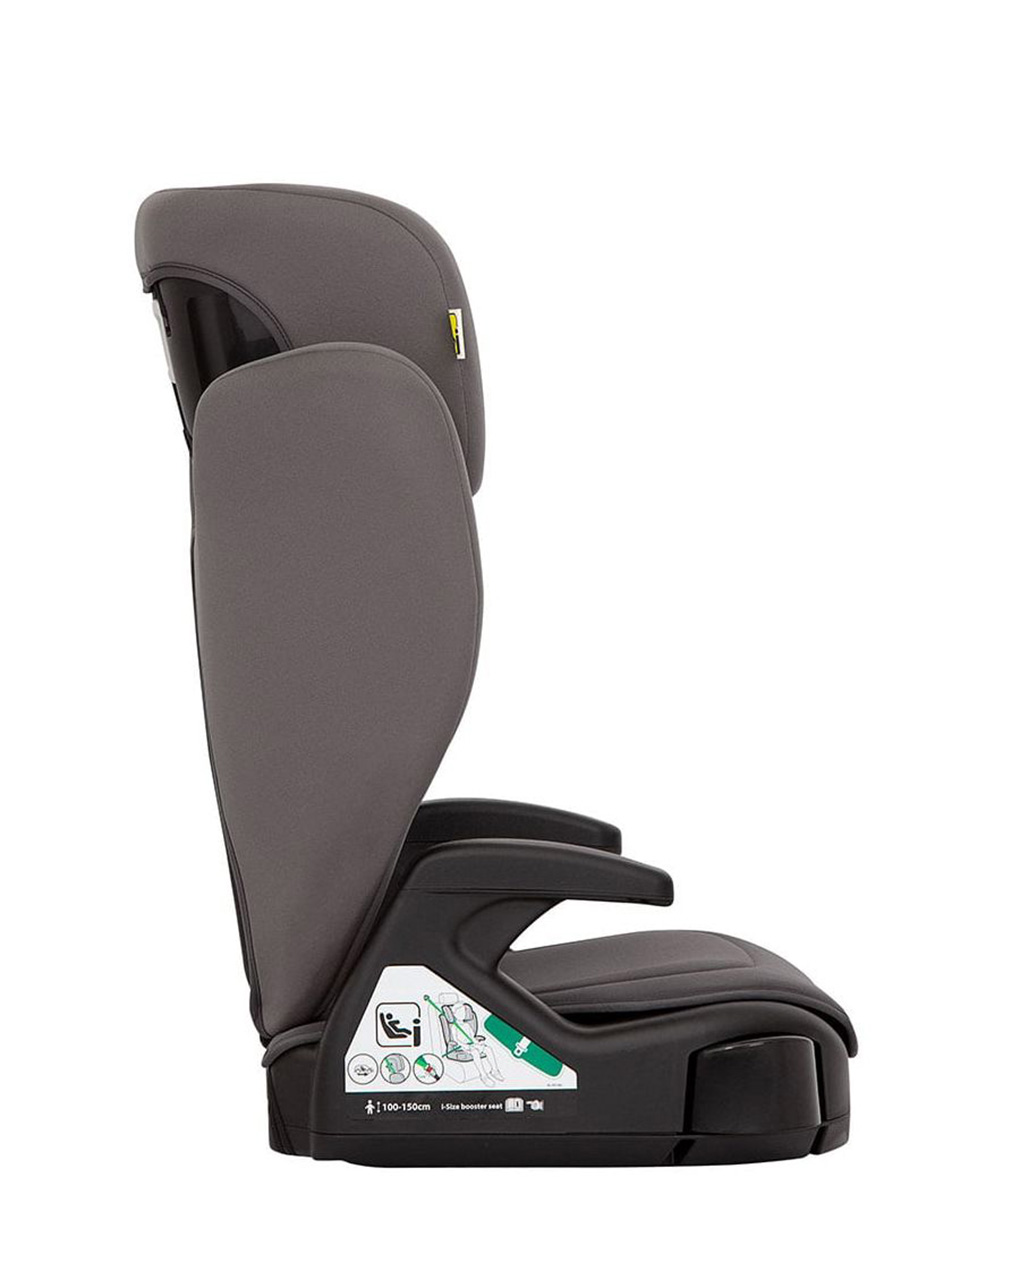 Graco κάθισμα αυτοκινήτου junior maxi i-size r129 iron - Graco